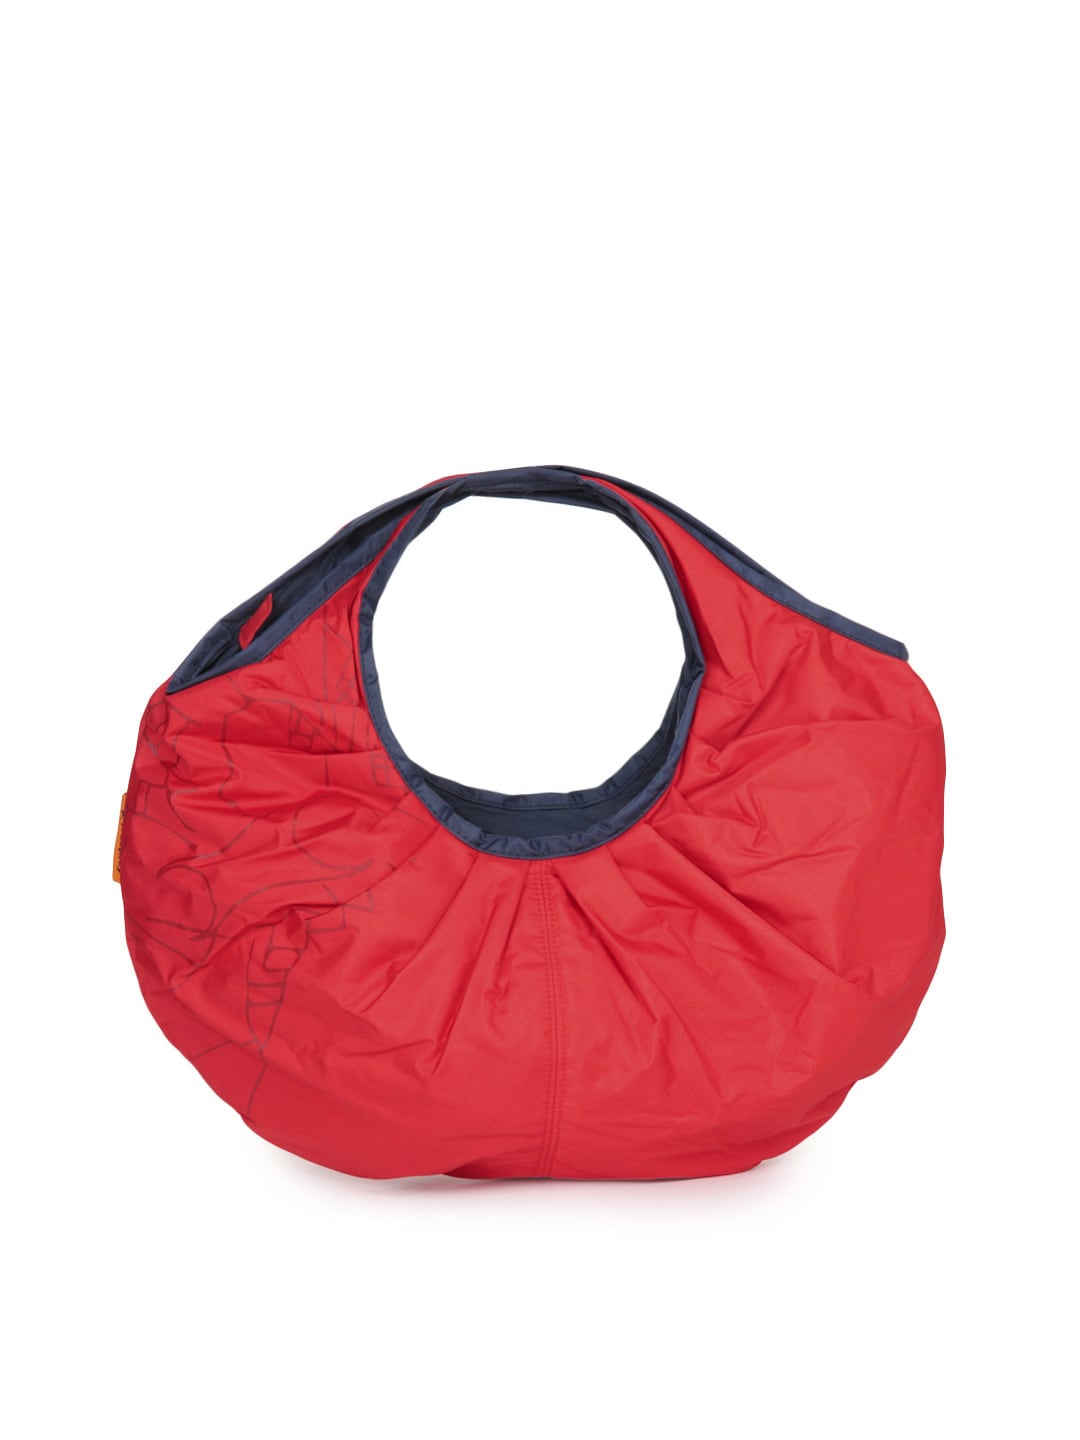 Fastrack Women Red Handbag